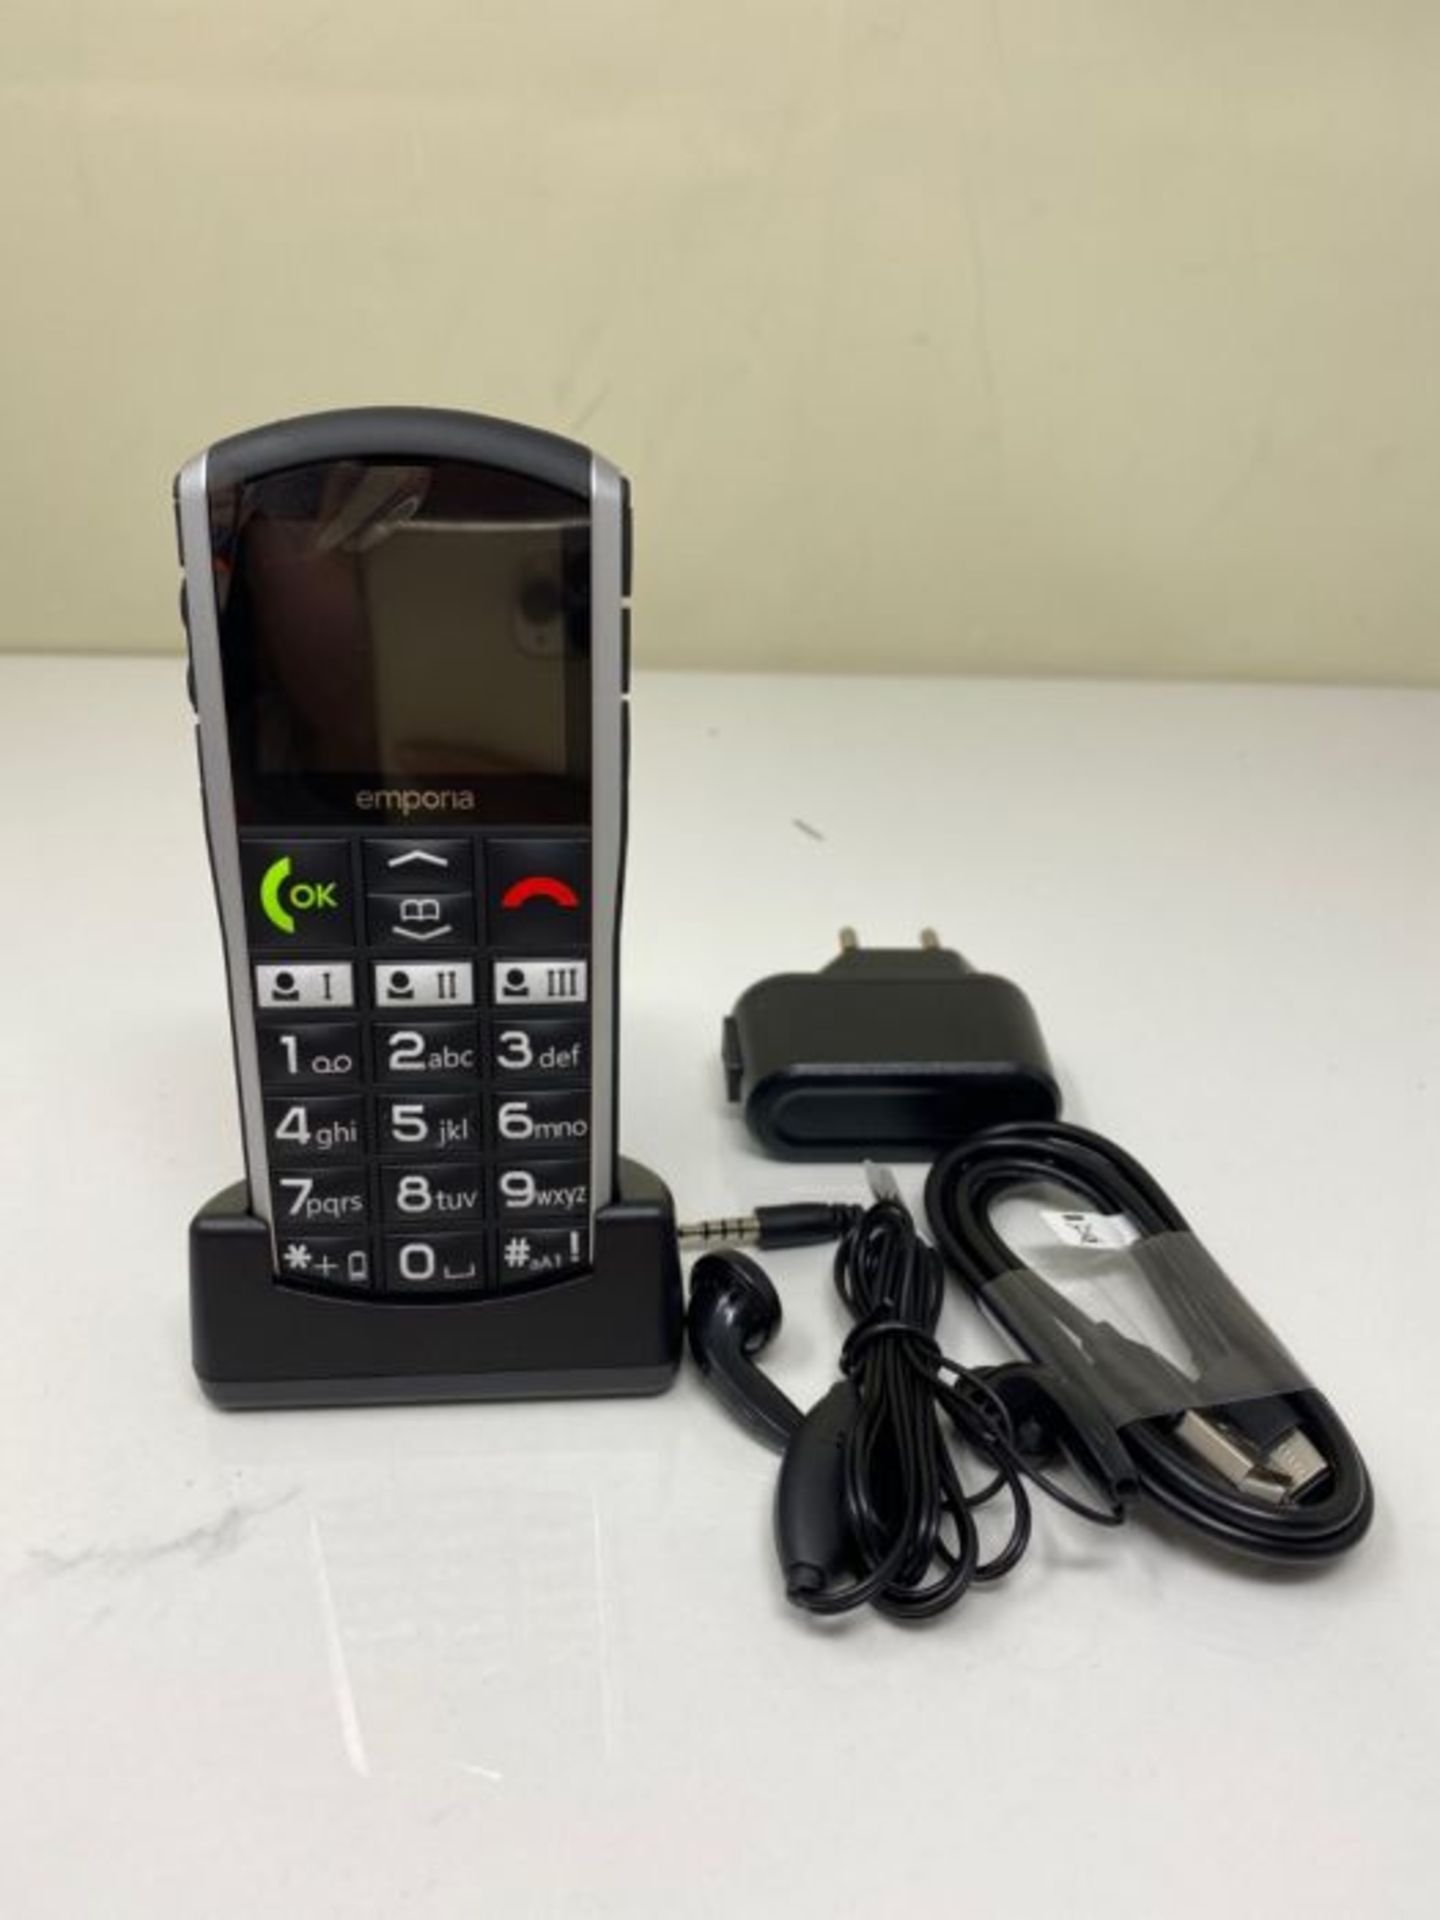 RRP £54.00 Emporia SiMPLiCiTY 5.08 cm (2") 90 g Black, Silver Senior phone SiMPLiCiTY, Bar, Singl - Image 3 of 3